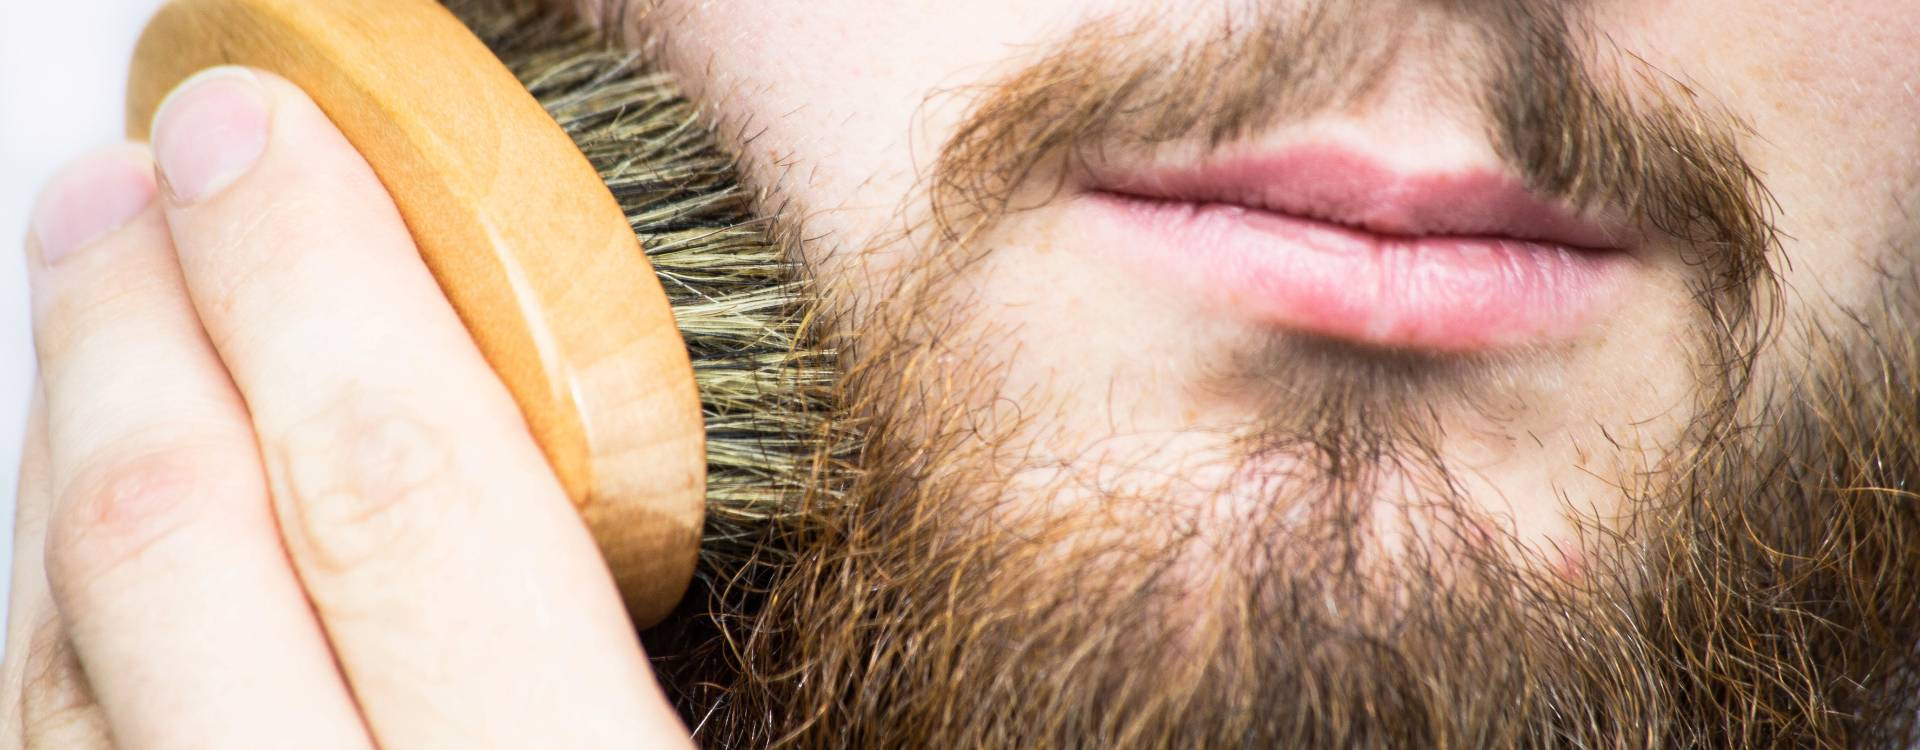 Brosse à barbe  Comment la choisir et l'utiliser